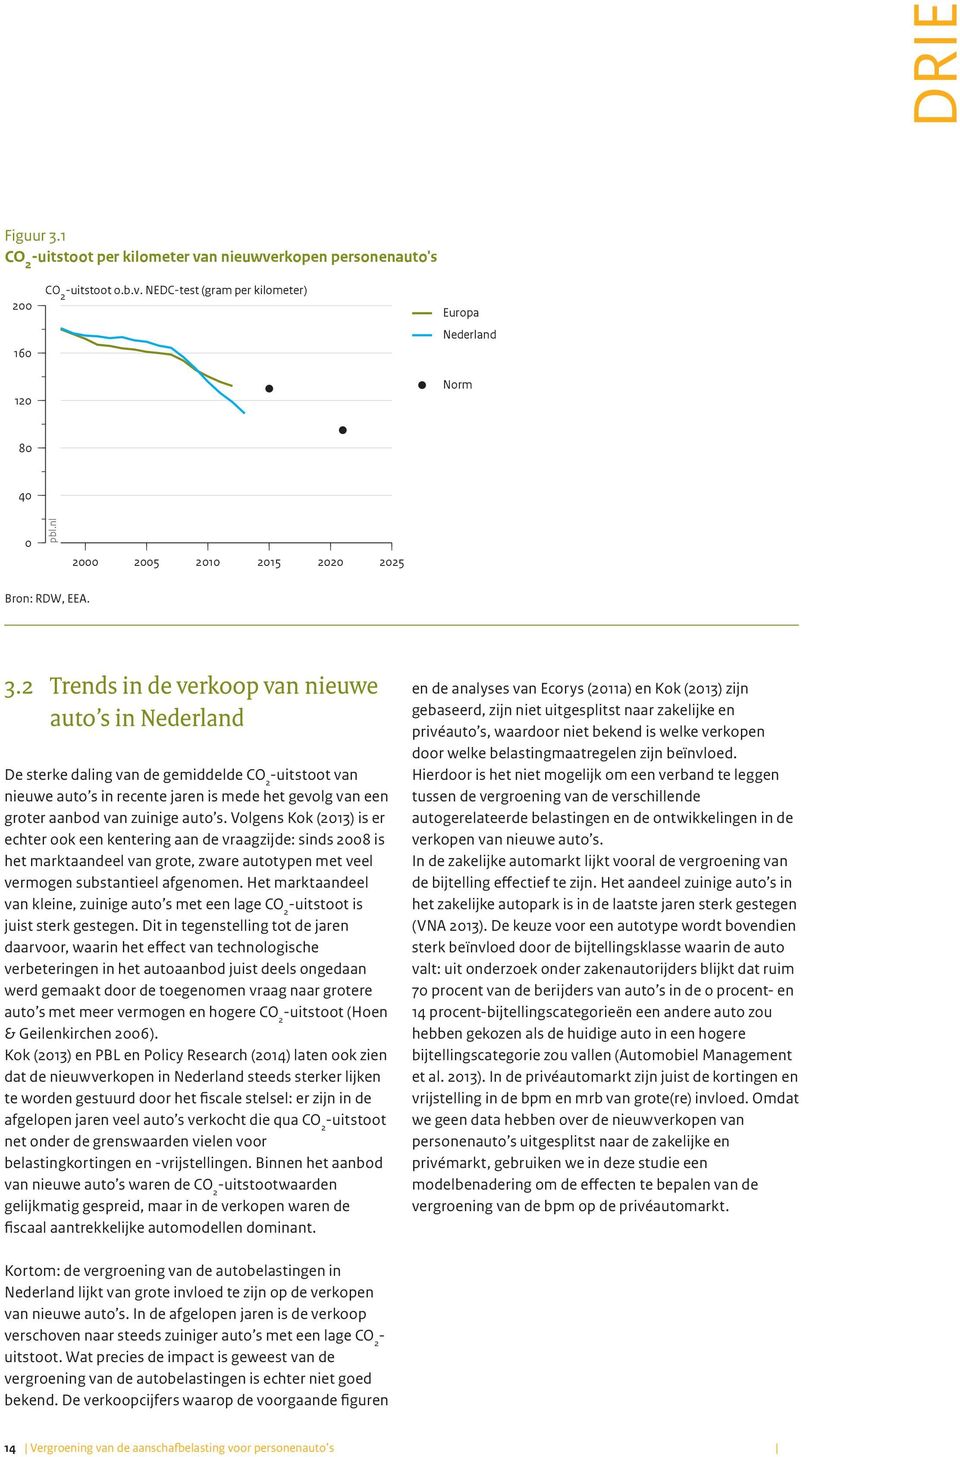 2 Trends in de verkoop van nieuwe auto s in Nederland De sterke daling van de gemiddelde uitstoot van nieuwe auto s in recente jaren is mede het gevolg van een groter aanbod van zuinige auto s.